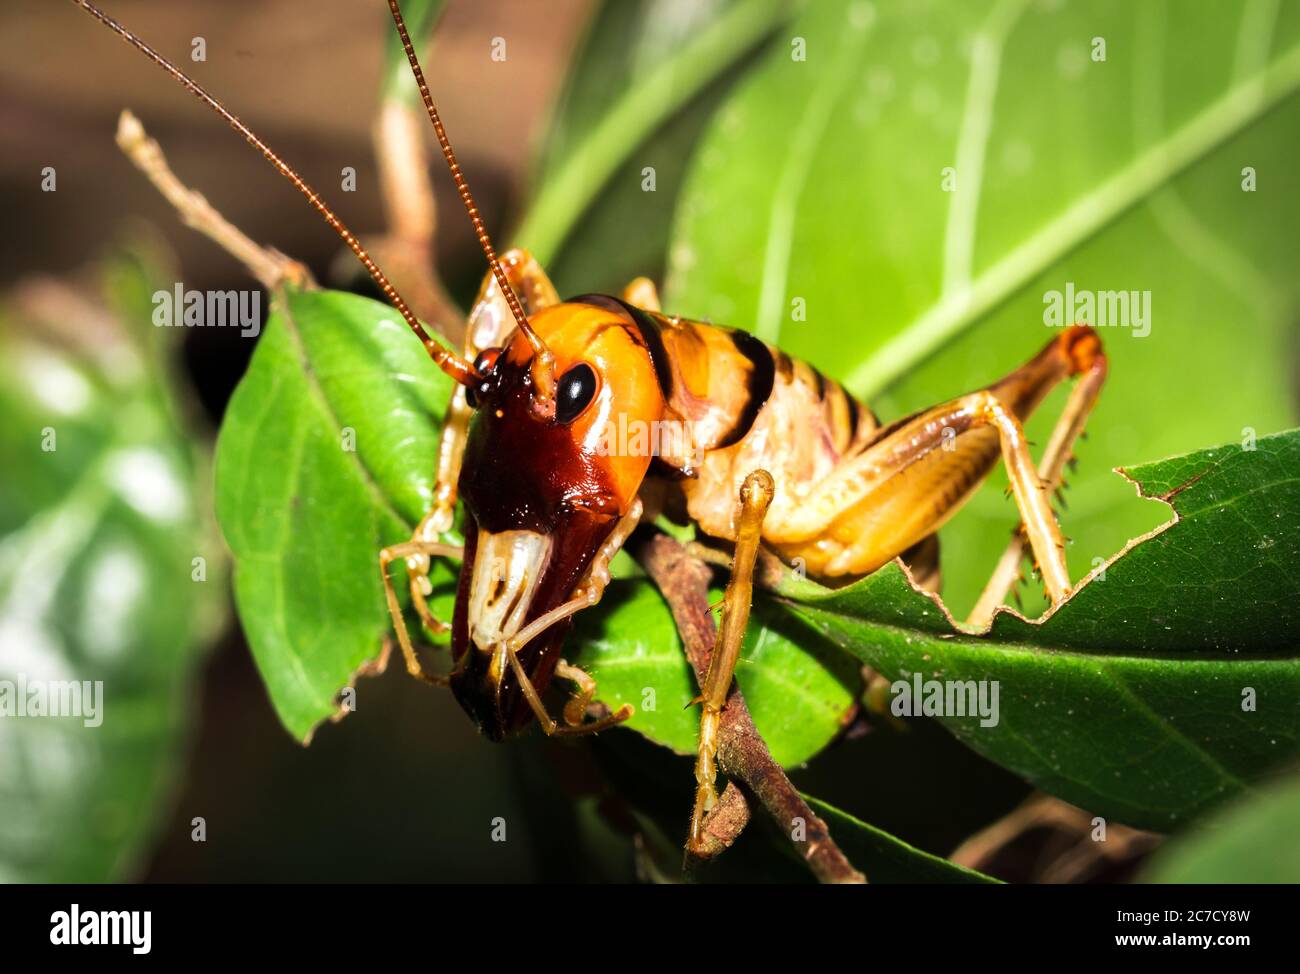 Madagascar King Cricket (Anostostomatidae) sitting resting, Nosy Komba, Madagascar Stock Photo